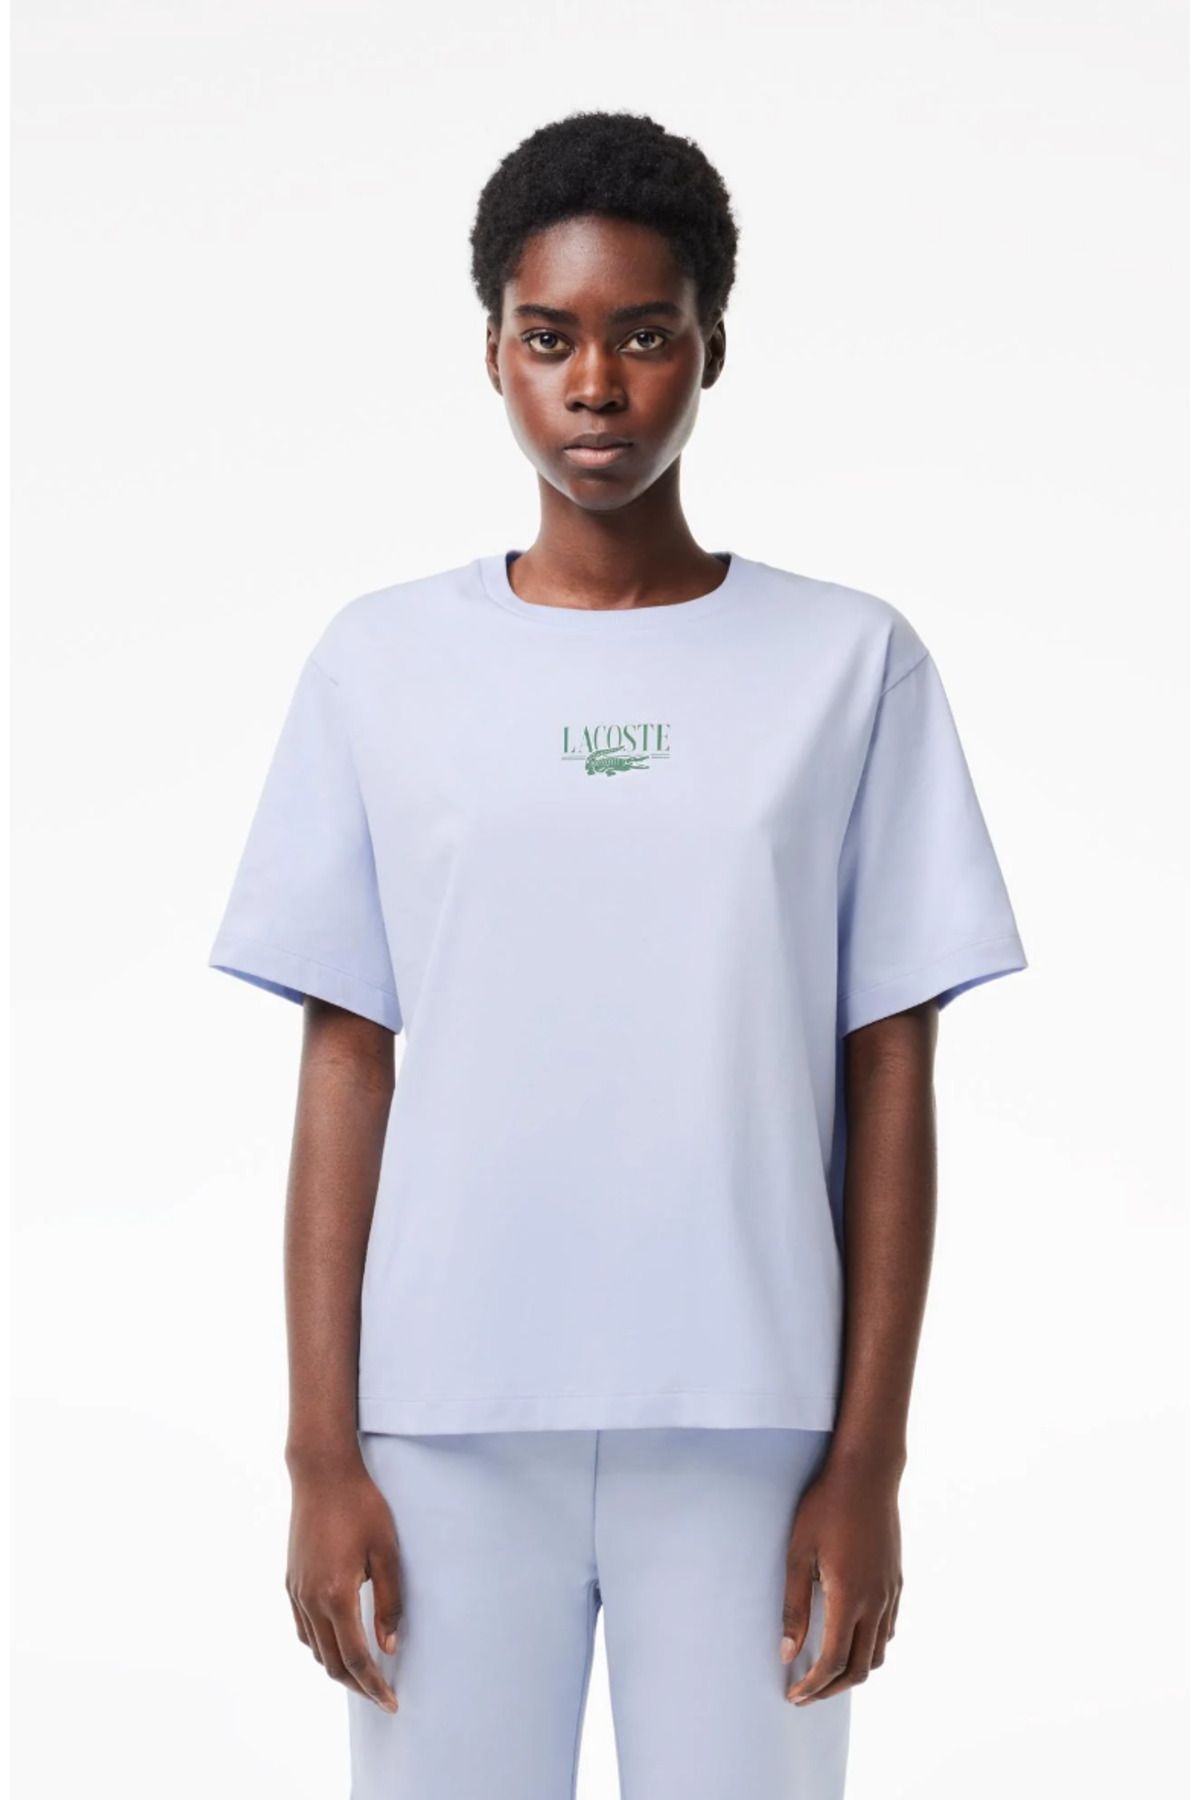 Lacoste Women’s Lacoste Print Cotton Jersey T-shirt